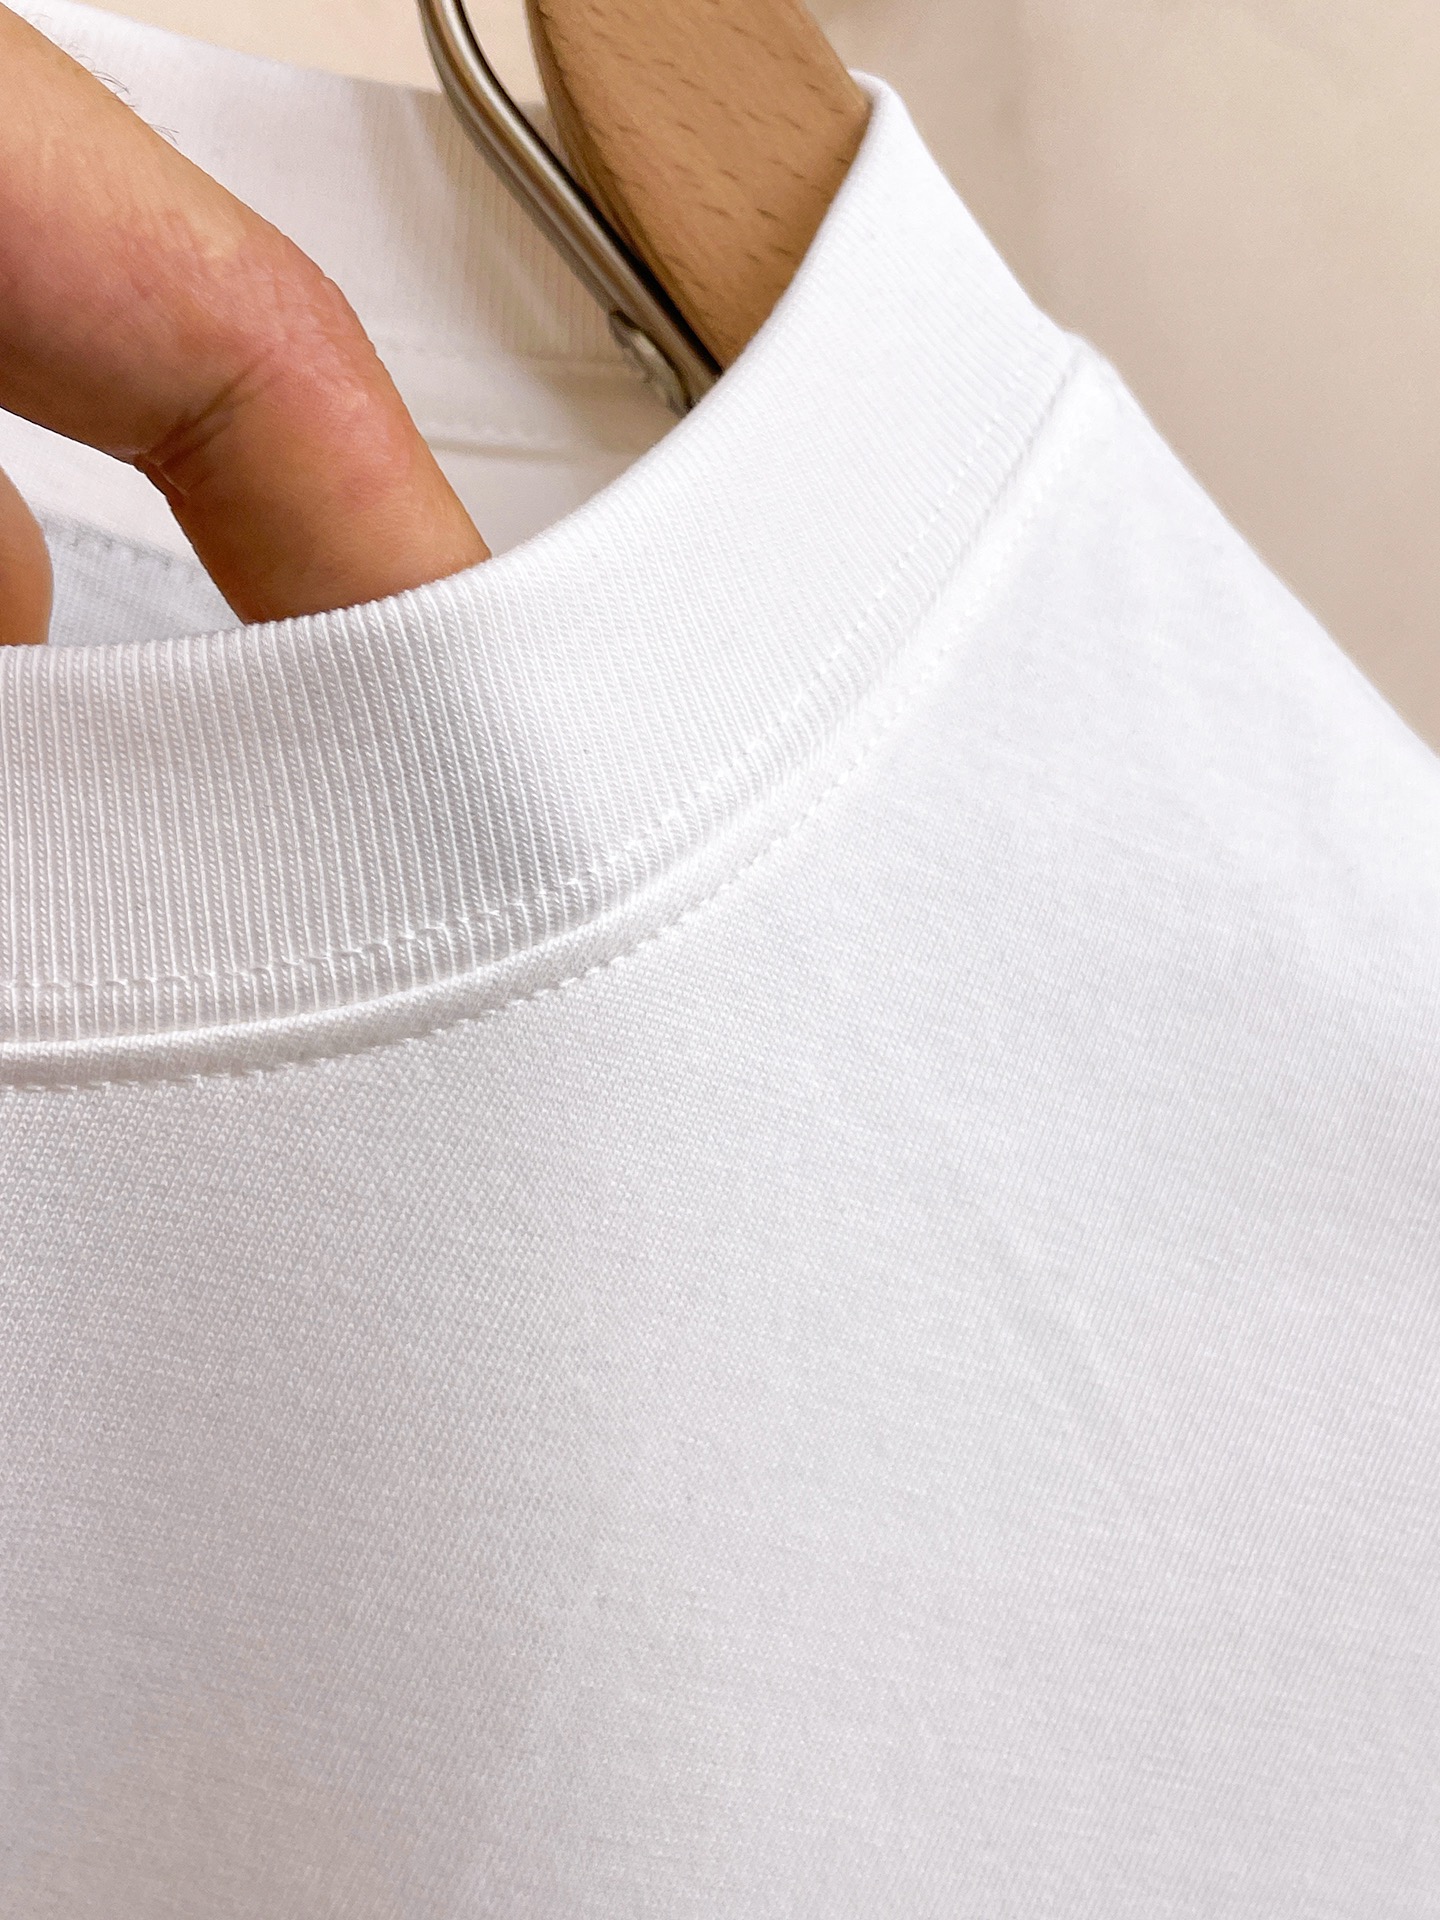 【激安】高級品通販 prada t シャツ メンズ激安通販 短袖 ゆったり 純綿 トップス プリント 夏服 ホワイト_6